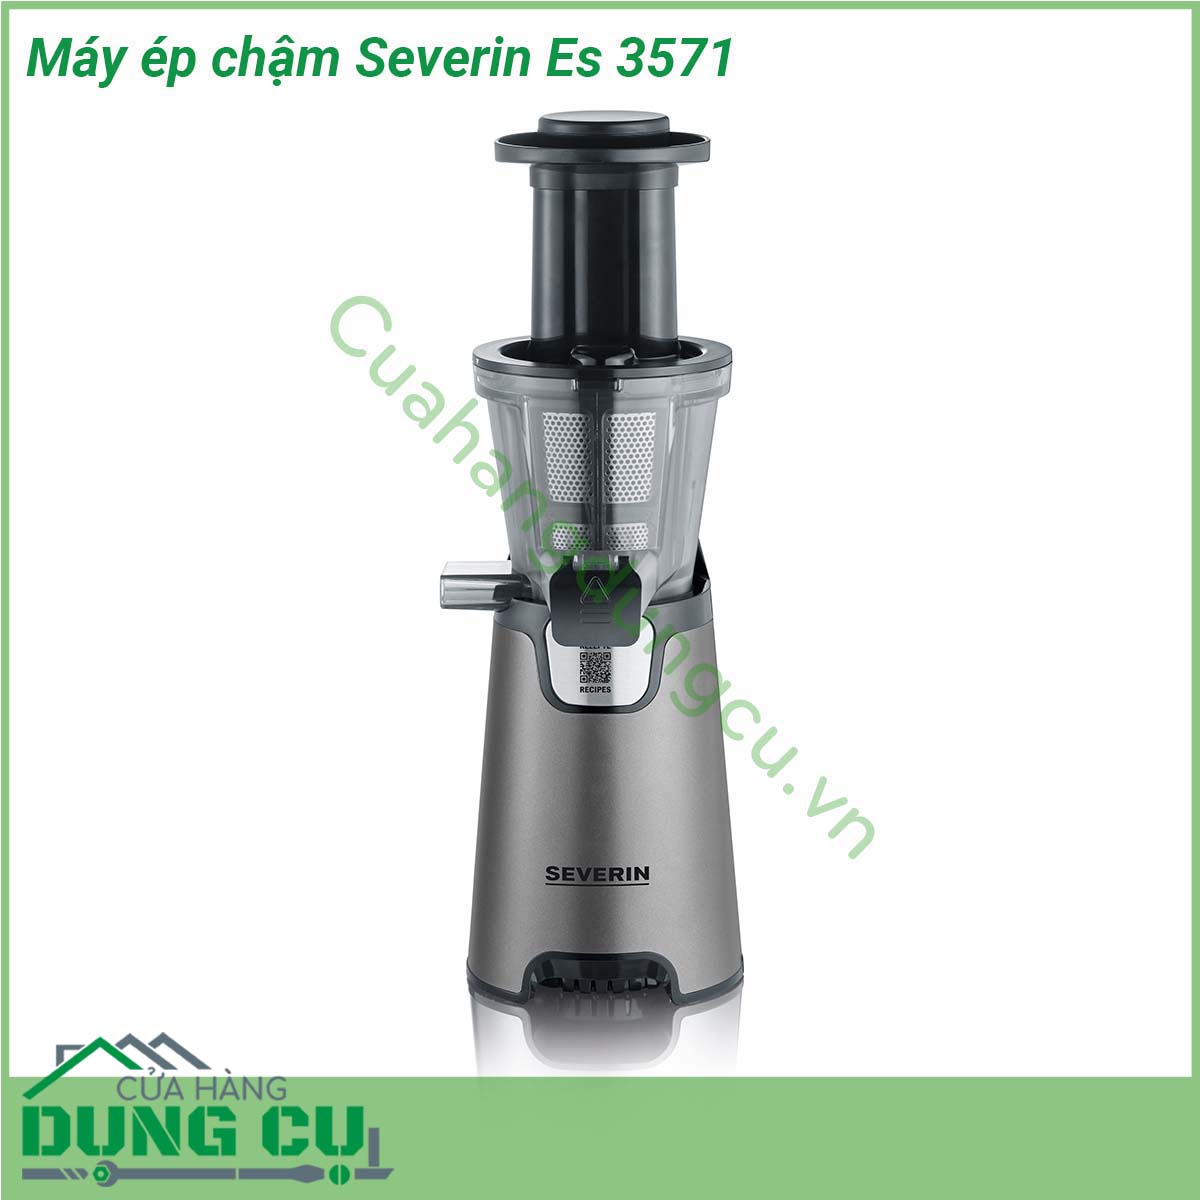 Máy ép chậm Severin Es 3571 được thiết kế với công nghệ hiện đại nên dòng máy ép chậm Severin hoạt động rất êm và ổn định mà đặc biệt không gây ra tiếng động ồn ào khi sử dụng Máy có thể ép triệt được nước của hoa quả rau củ mà không để lại cặn bã và vẫn đảm bảo giữ được các chất dinh dưỡng và vitamin có trong thực phẩm  